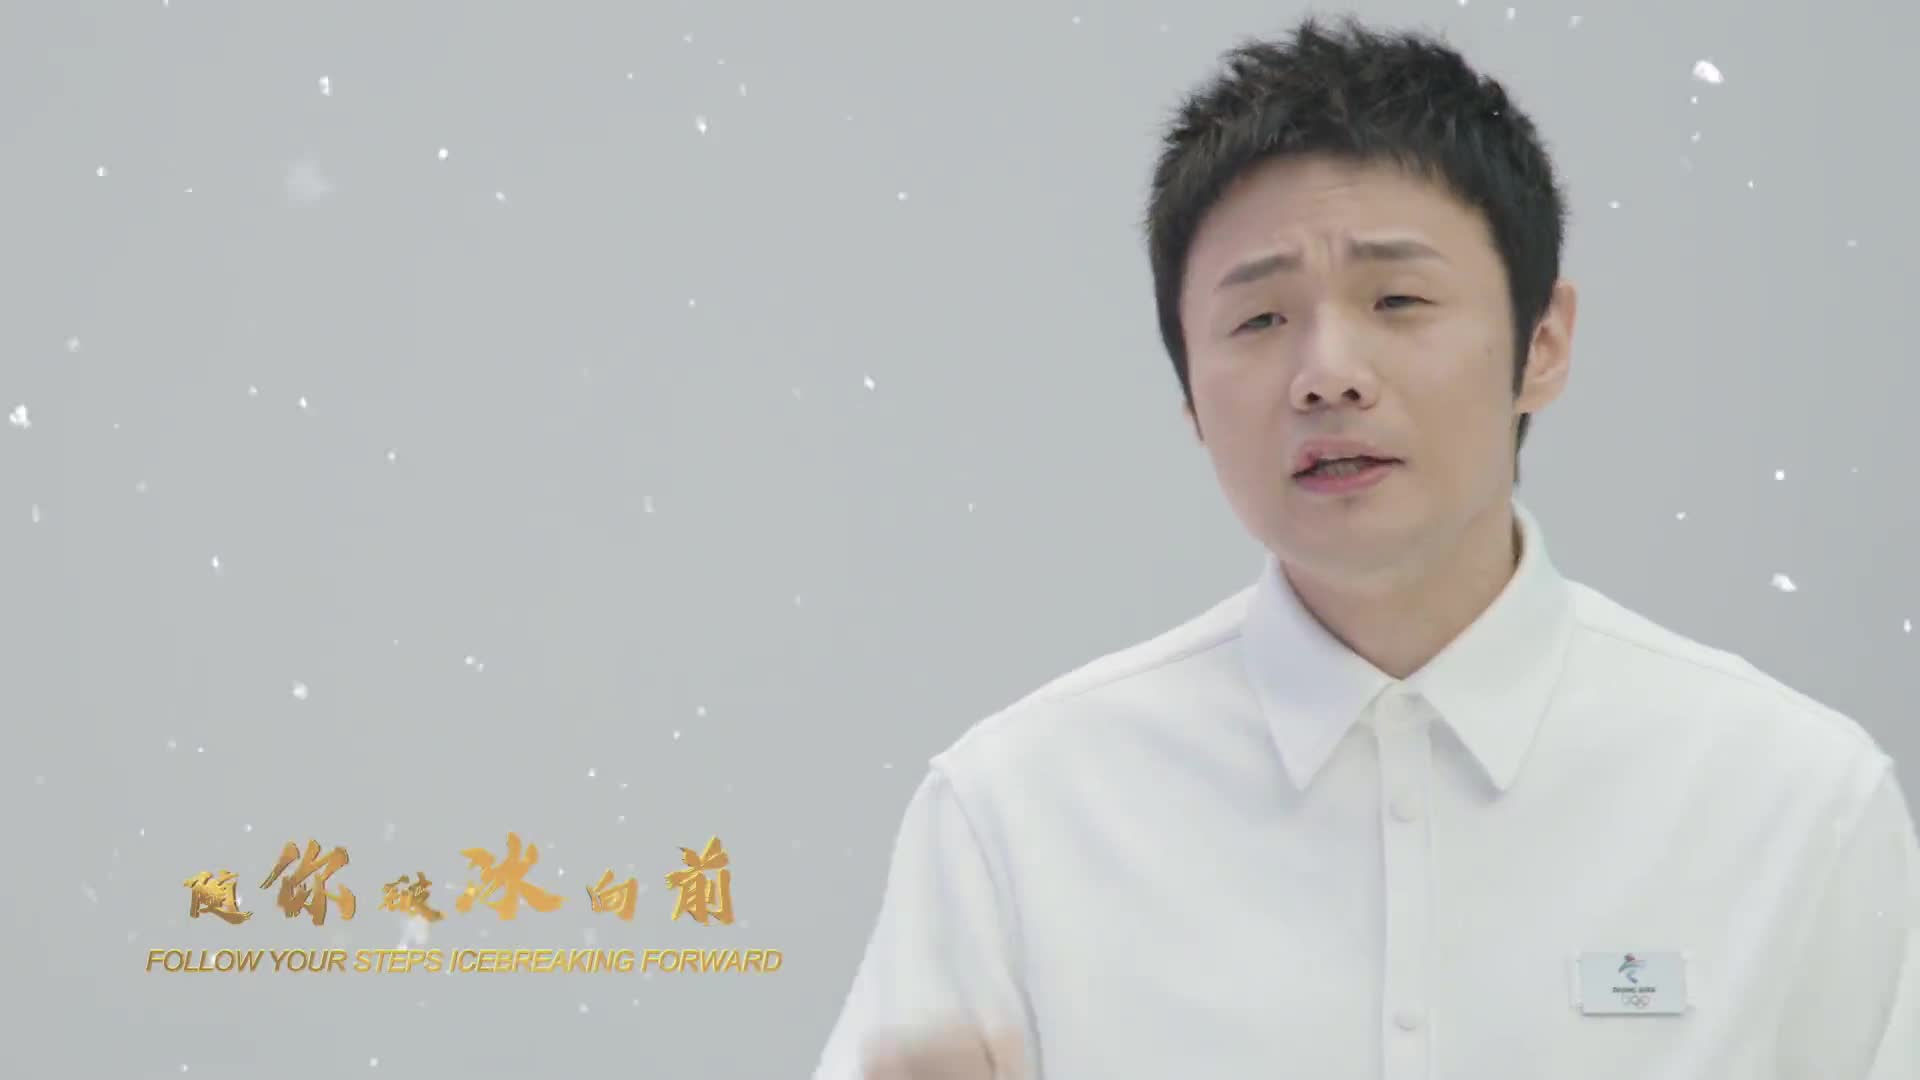 北京2022年冬奥会和冬残奥会颁奖仪式推广歌曲《致敬勇士》